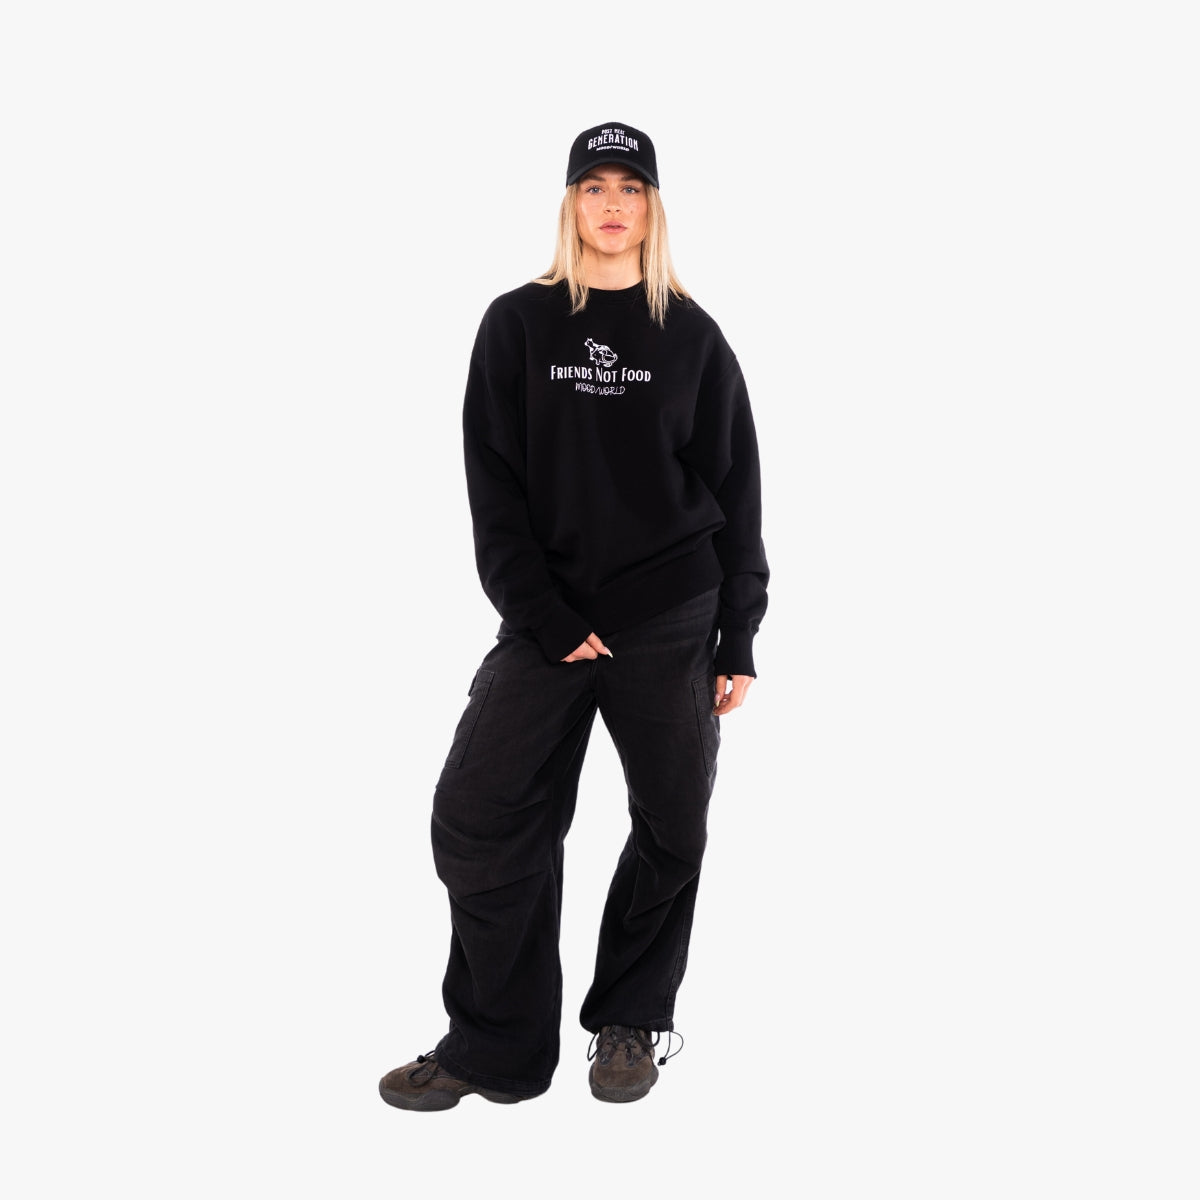 'FRIENDS NOT FOOD Signature' Organic Oversize Sweatshirt in der Farbe Black als Komplettaufnahme vom Outfit getragen von einem weiblichen Model